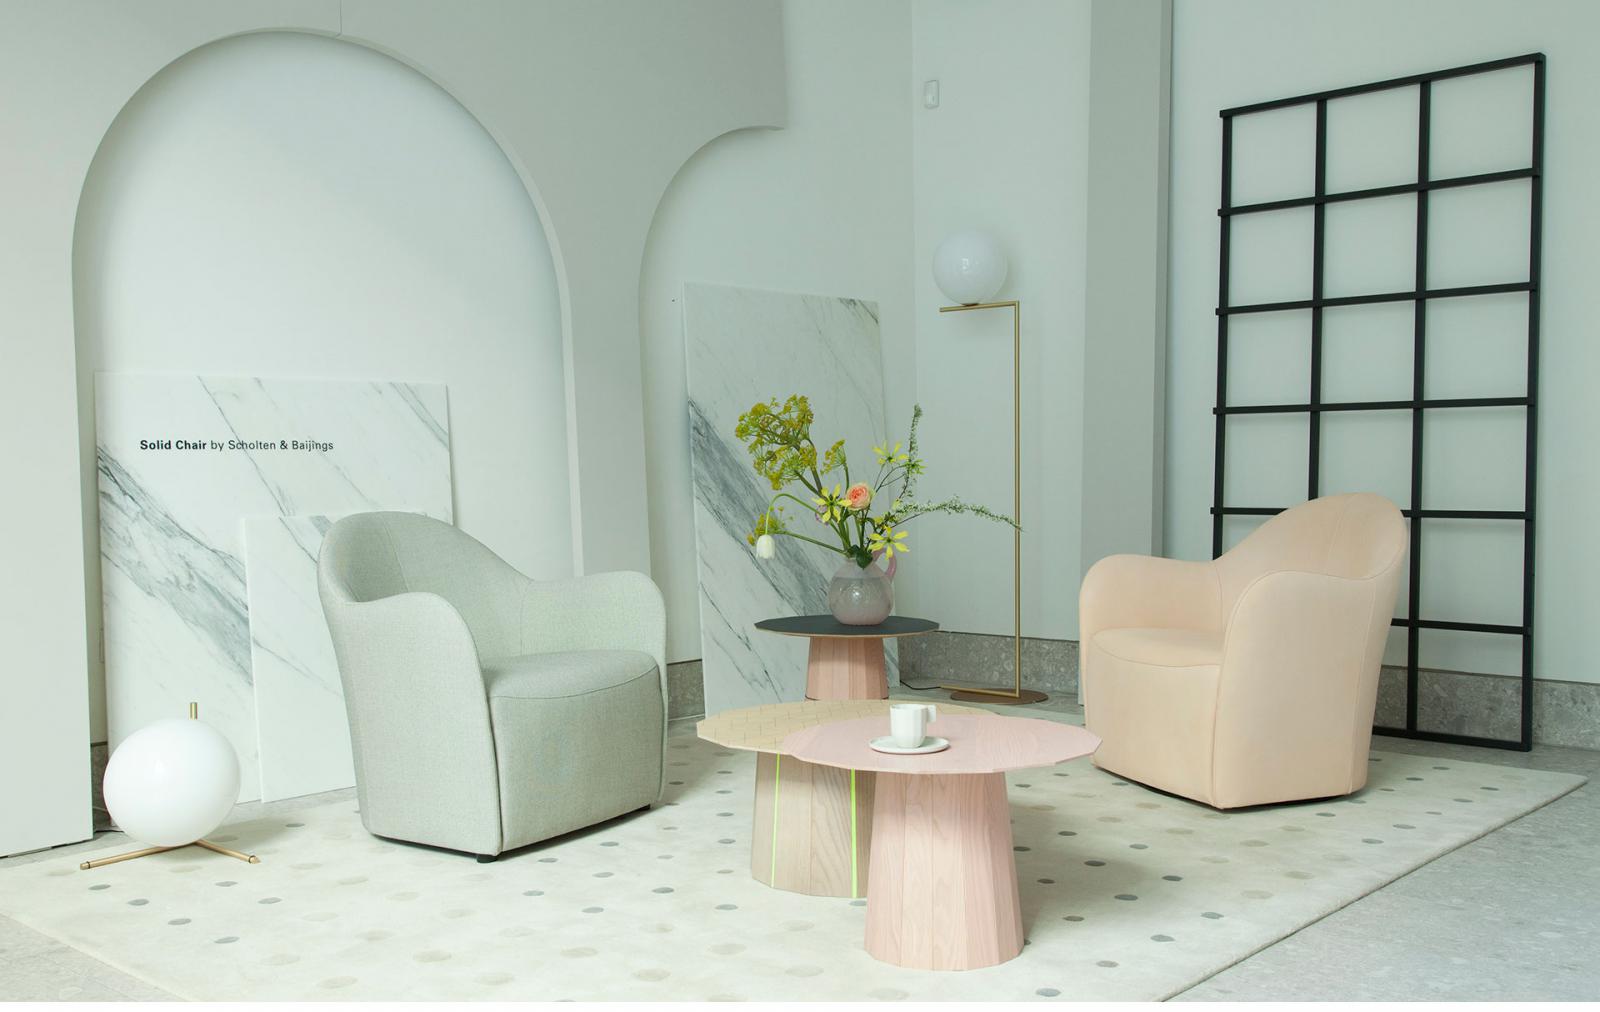 Шведские квартиры: 18 современных проектов дизайна интерьера в разных стилях